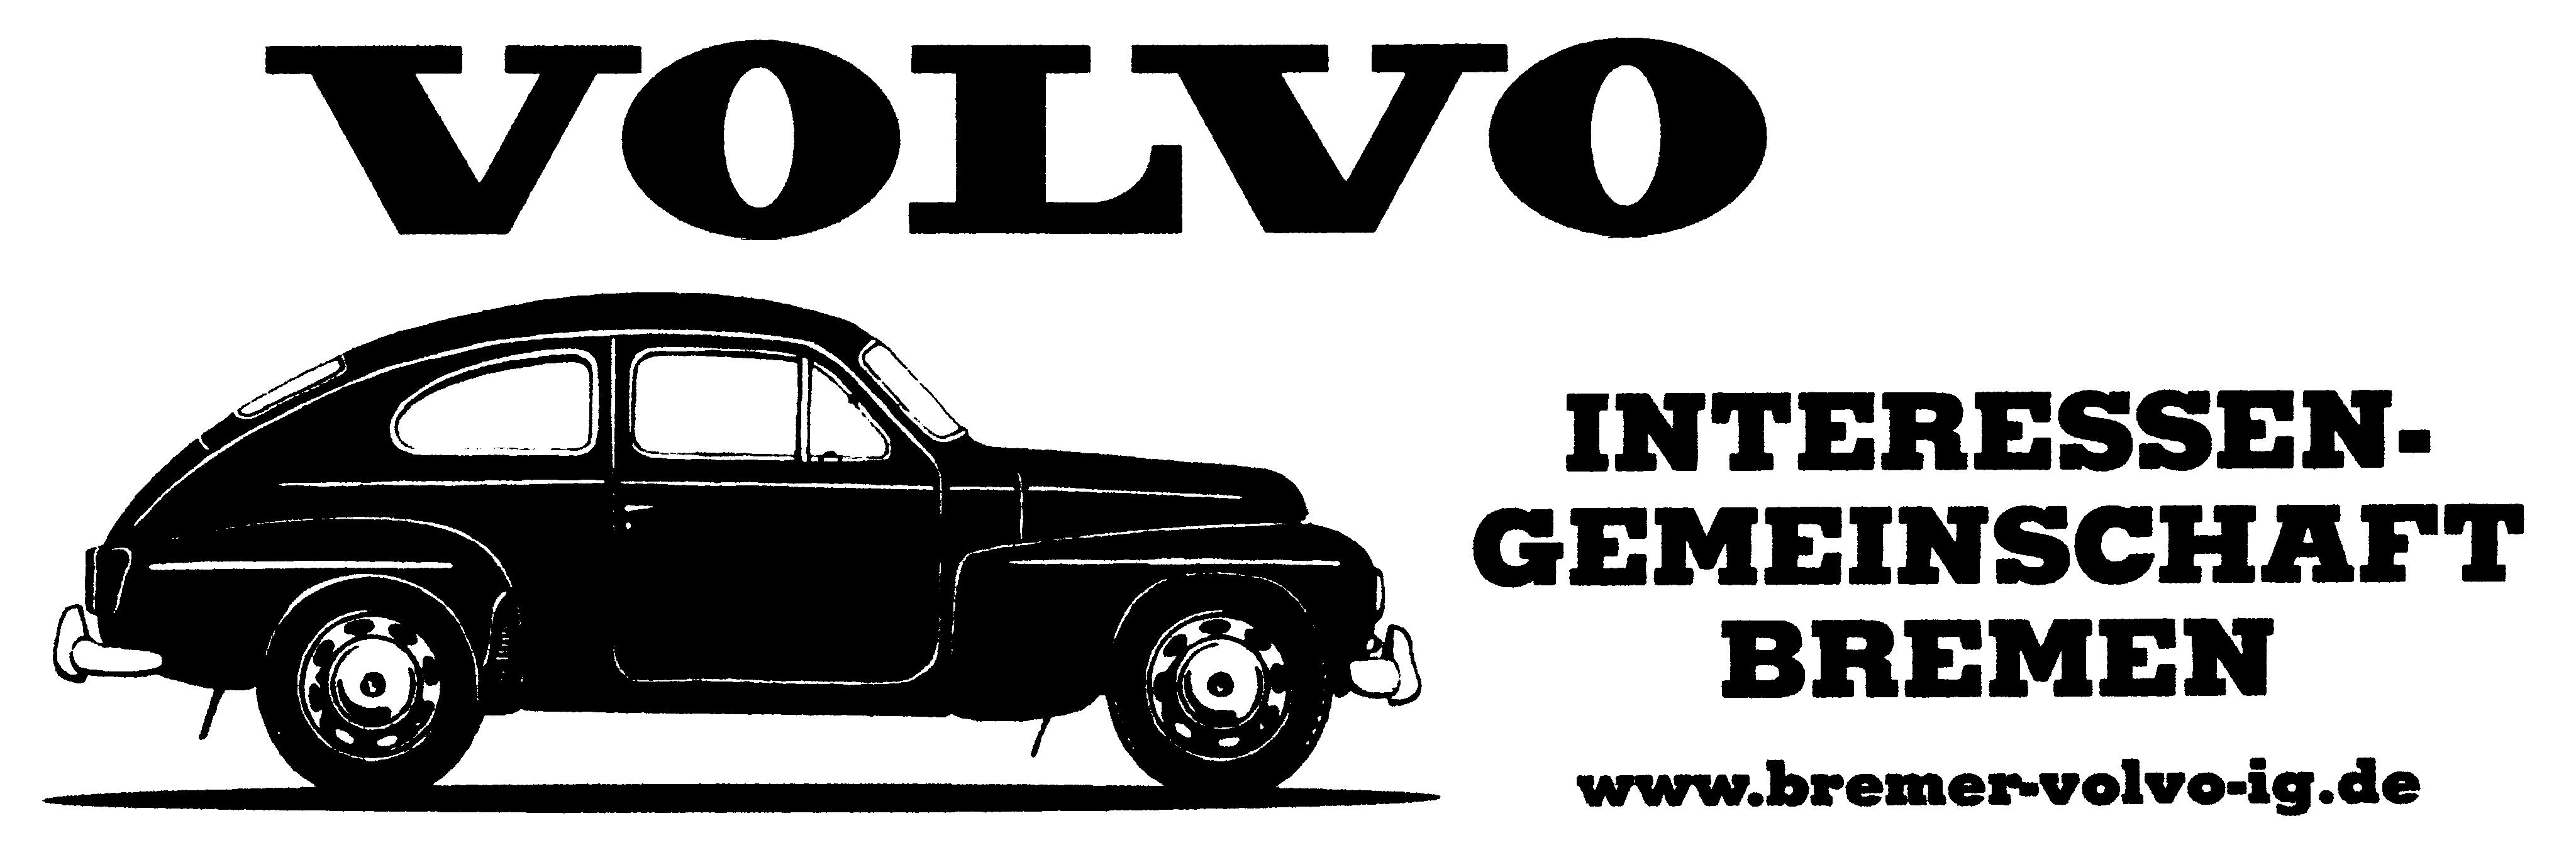 Volvo-Bertone-IG